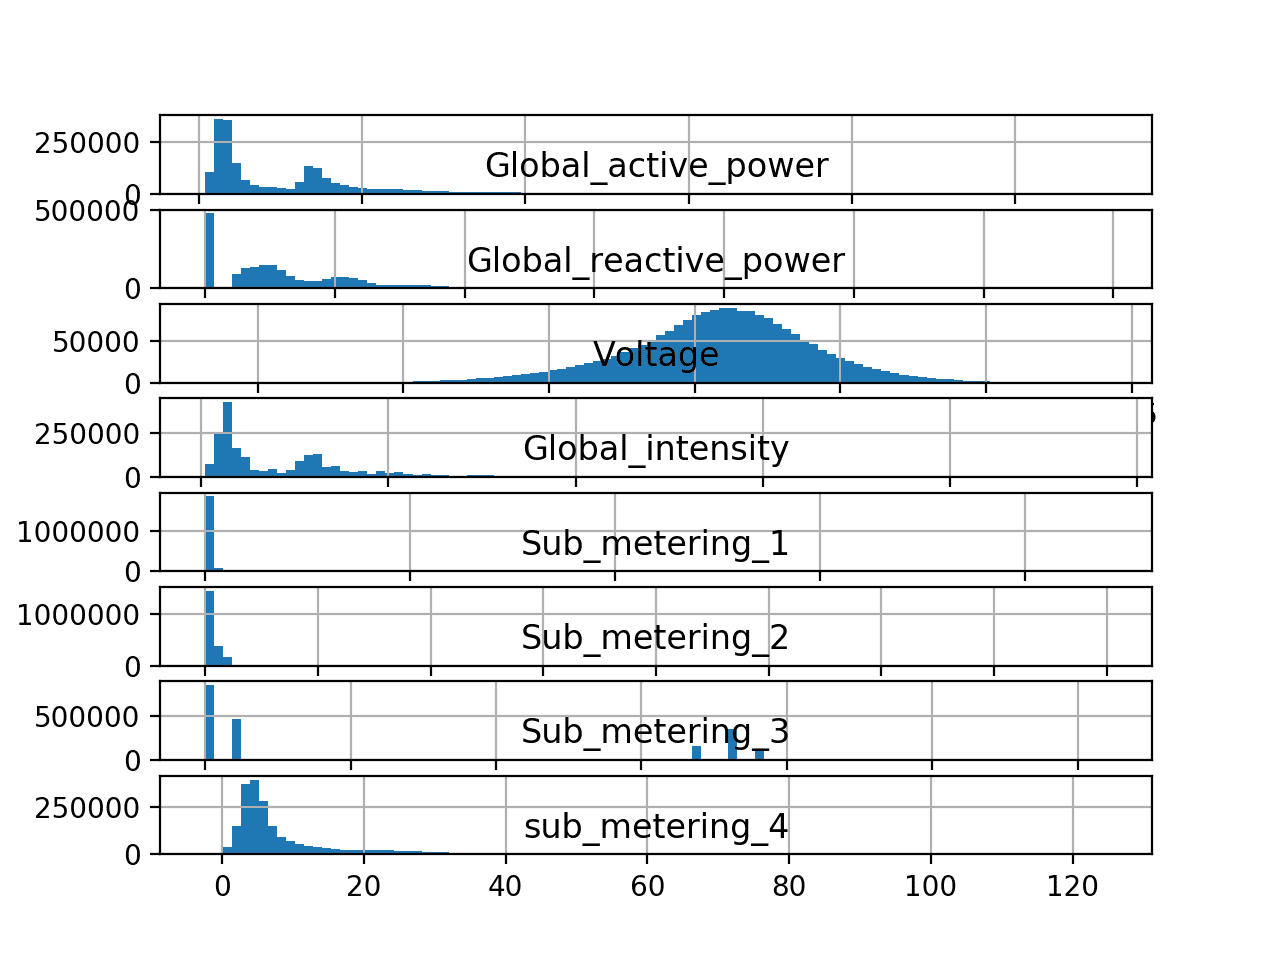 Gráficos de histograma para cada variable en el conjunto de datos de consumo de energía